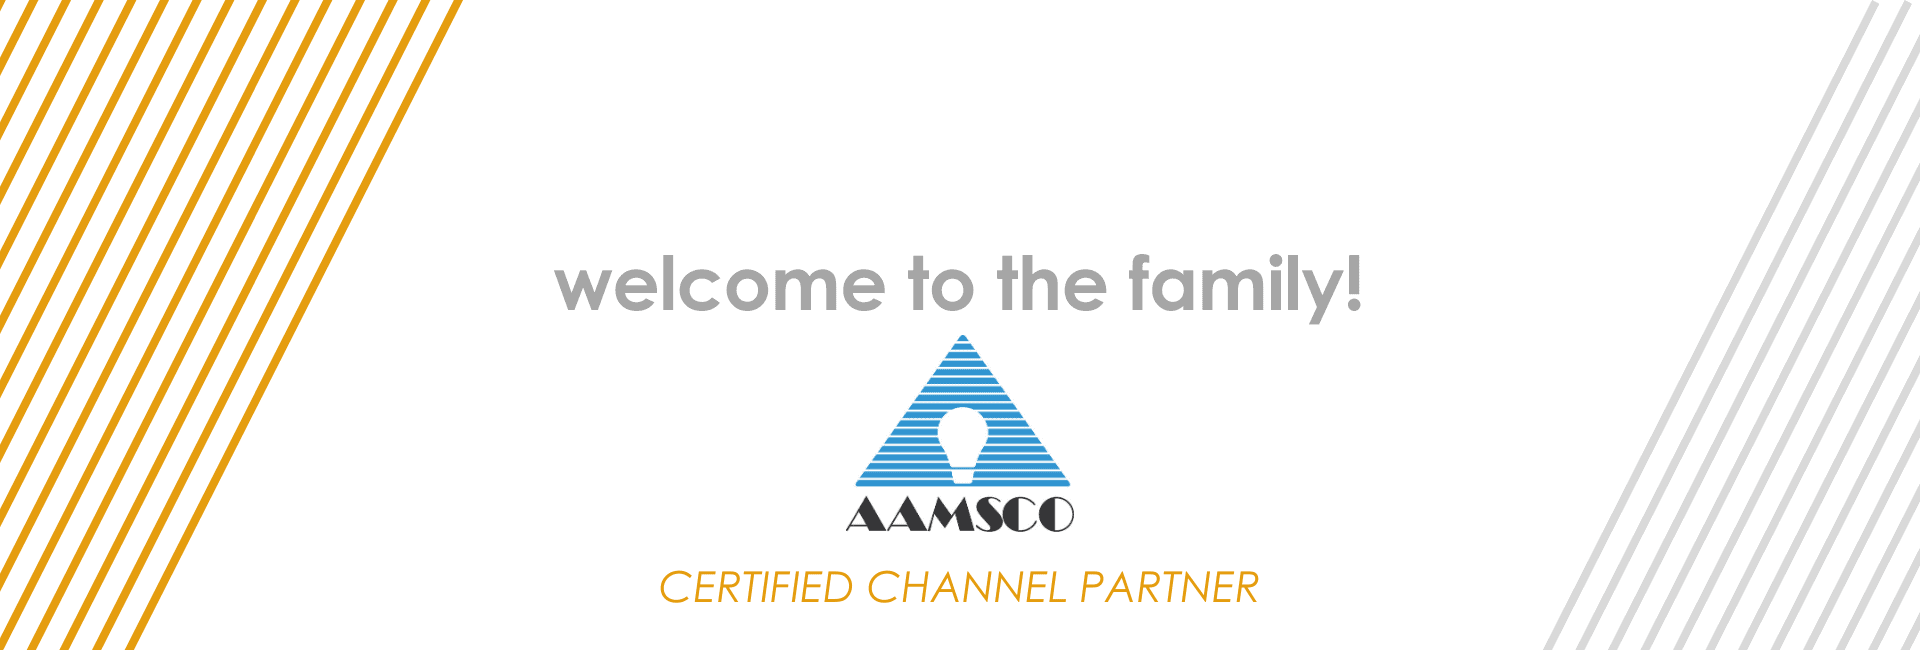 Aamsco Lighting Joins the Channel Partner Program | OLEDWorks